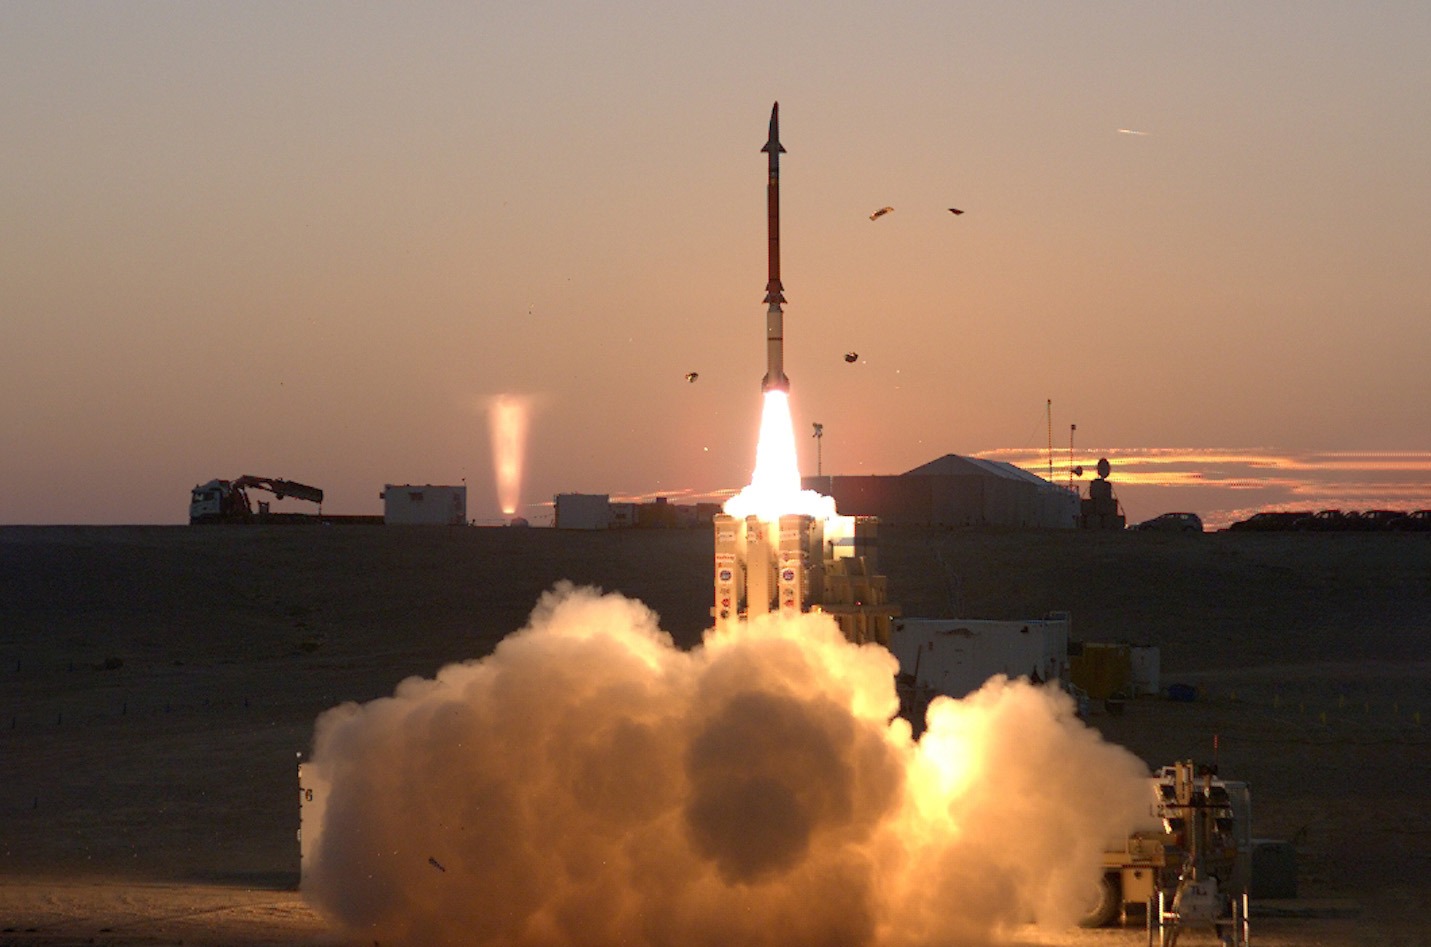 Пуск ракеты комплекса "Праща Давида". Фото © Wikipedia / United States Missile Defense Agency